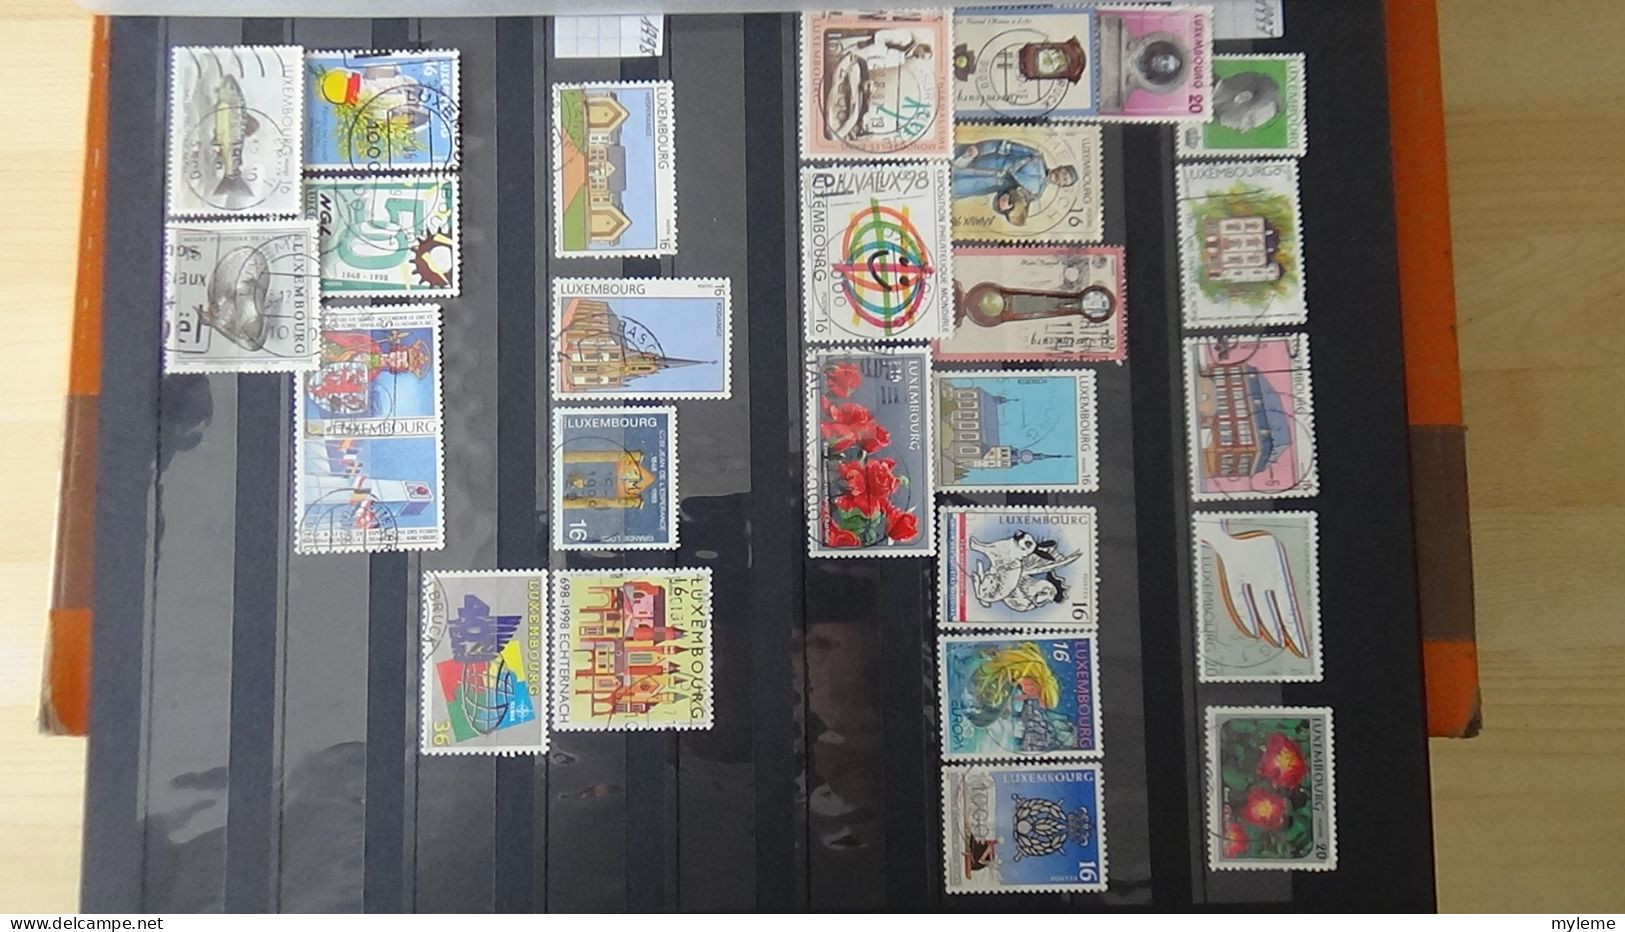 BF48 Bel ensemble de timbres de divers pays dont N° 61 + 75 + 77 ** avec petits défauts. A saisir !!!